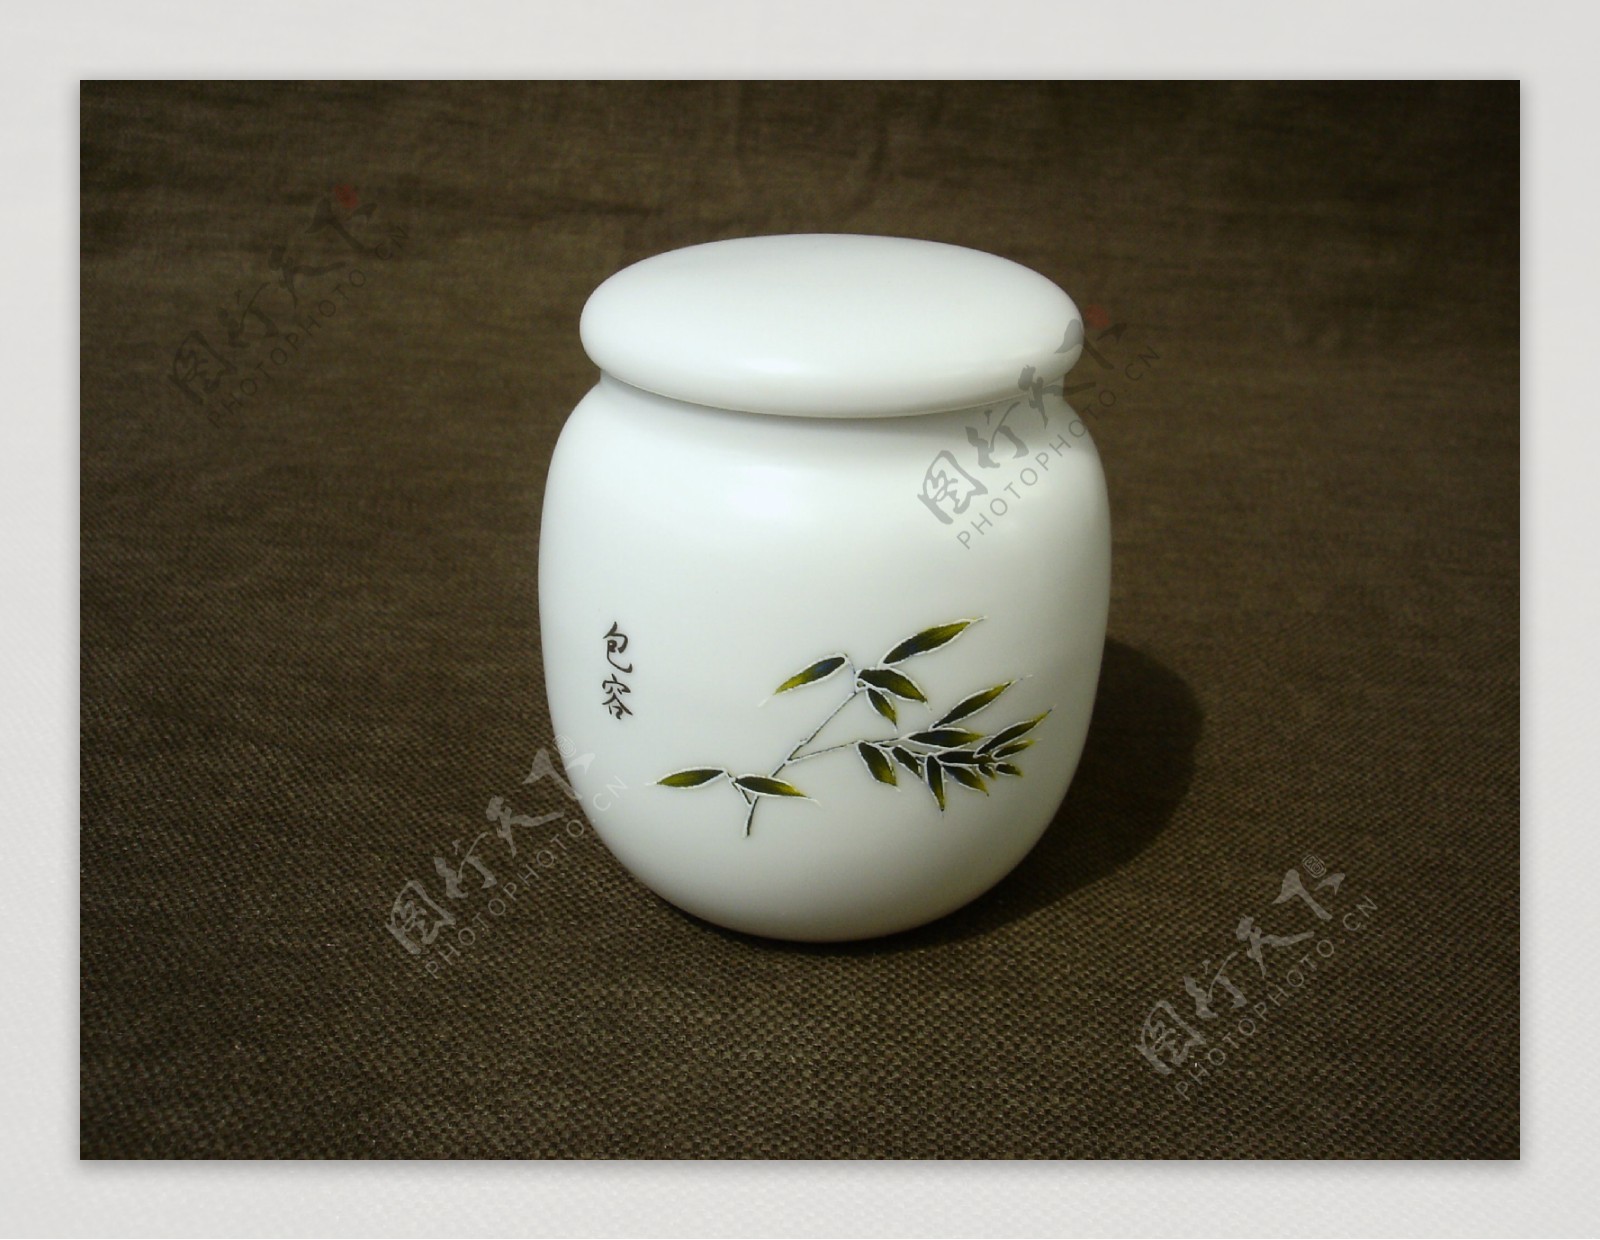 竹定窑白瓷茶叶罐图片